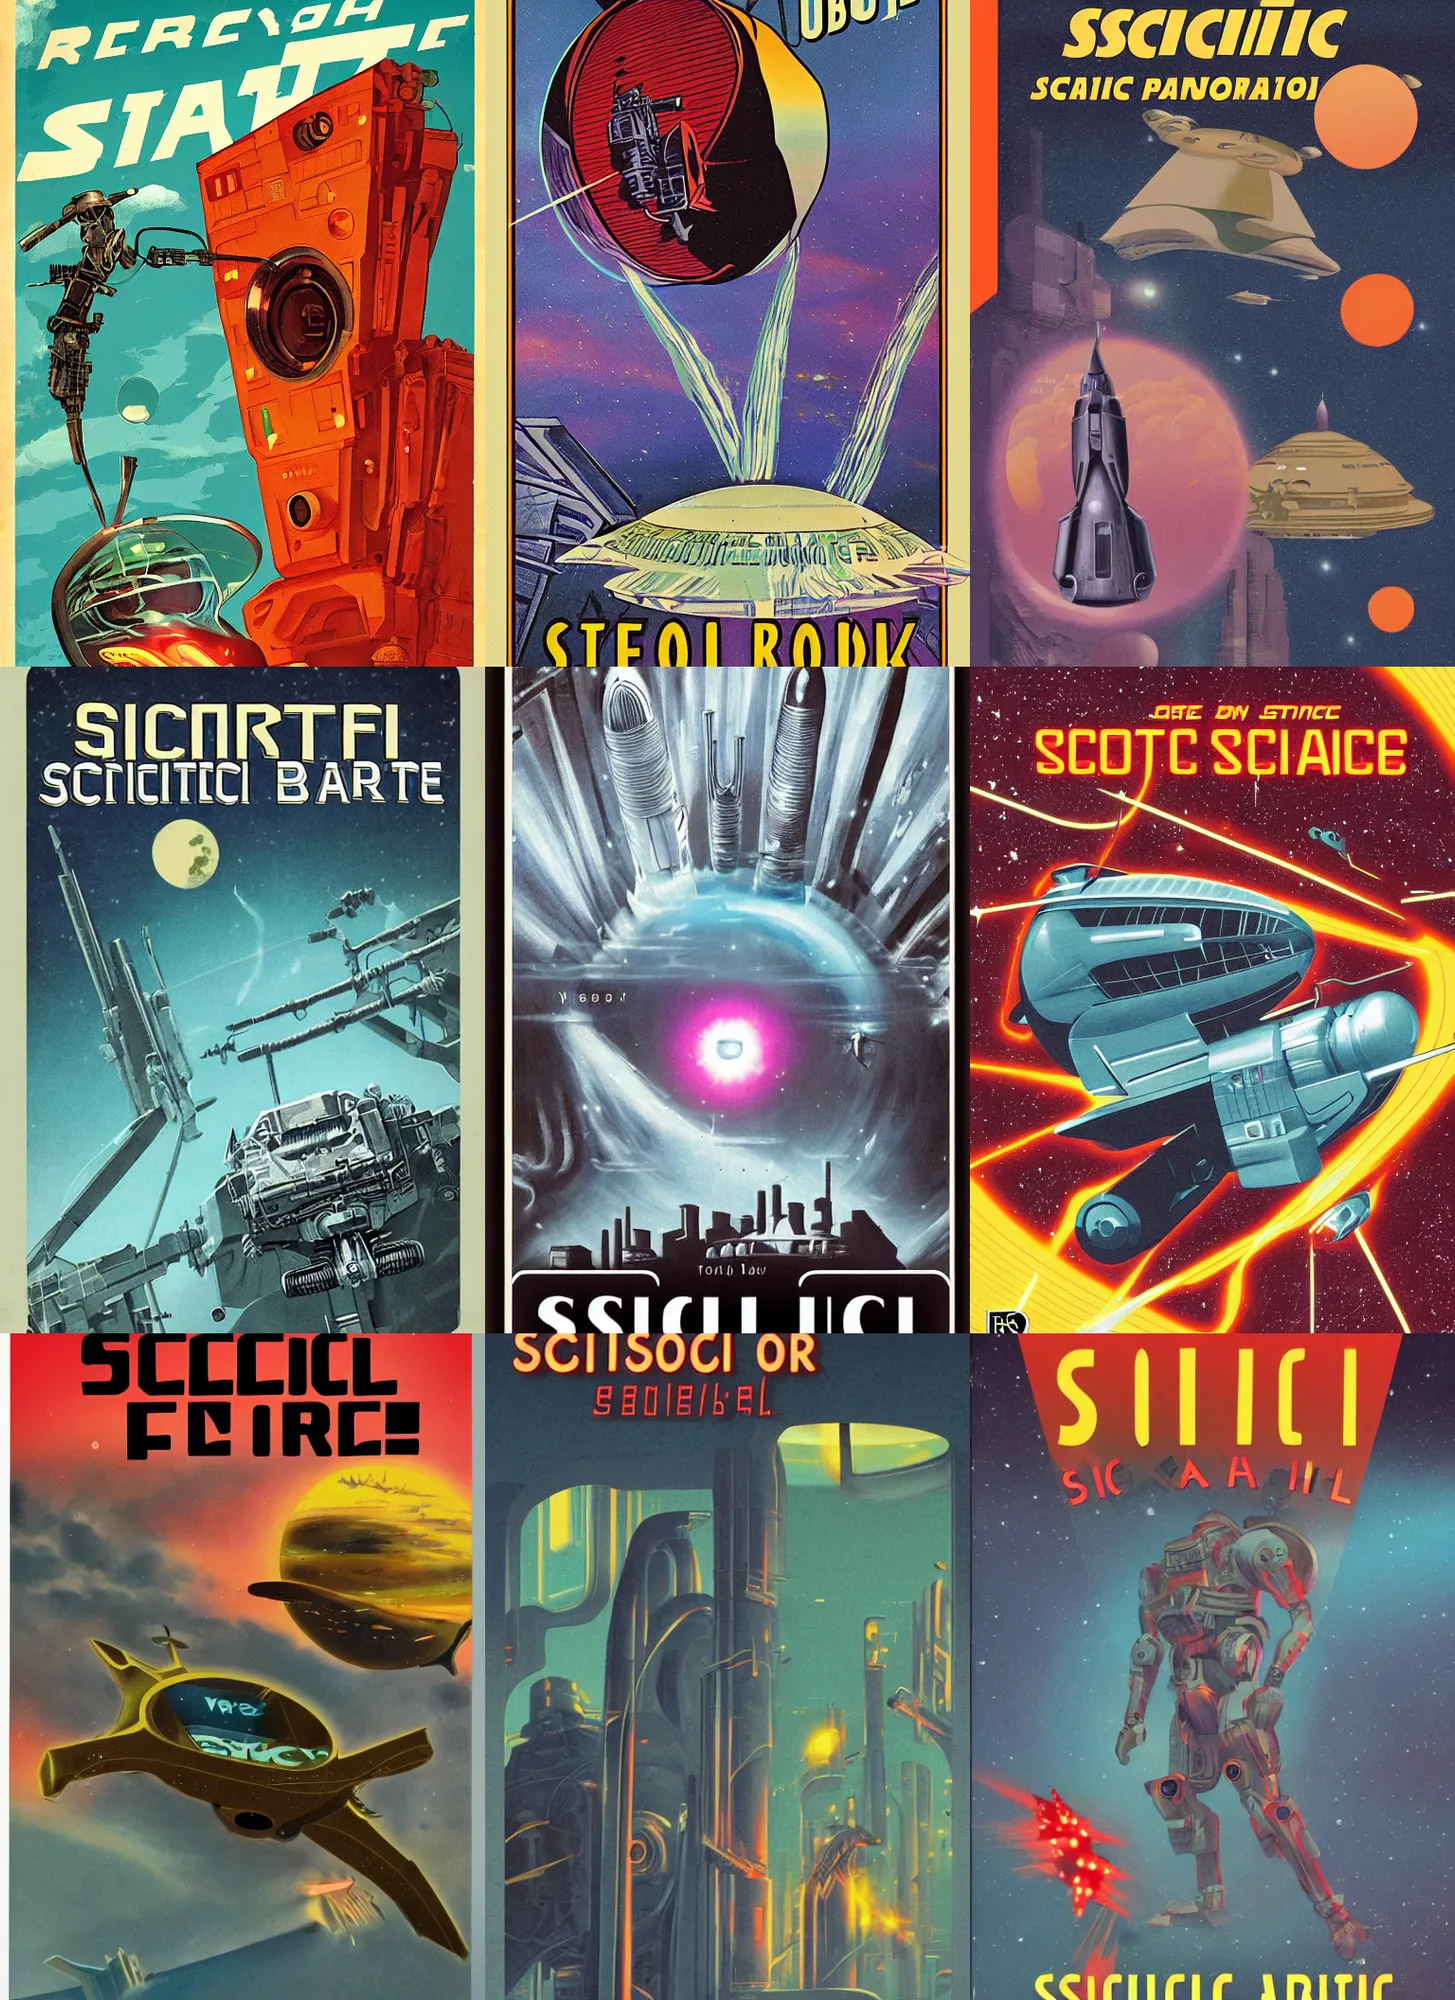 Prompt: retro sci - fi book cover